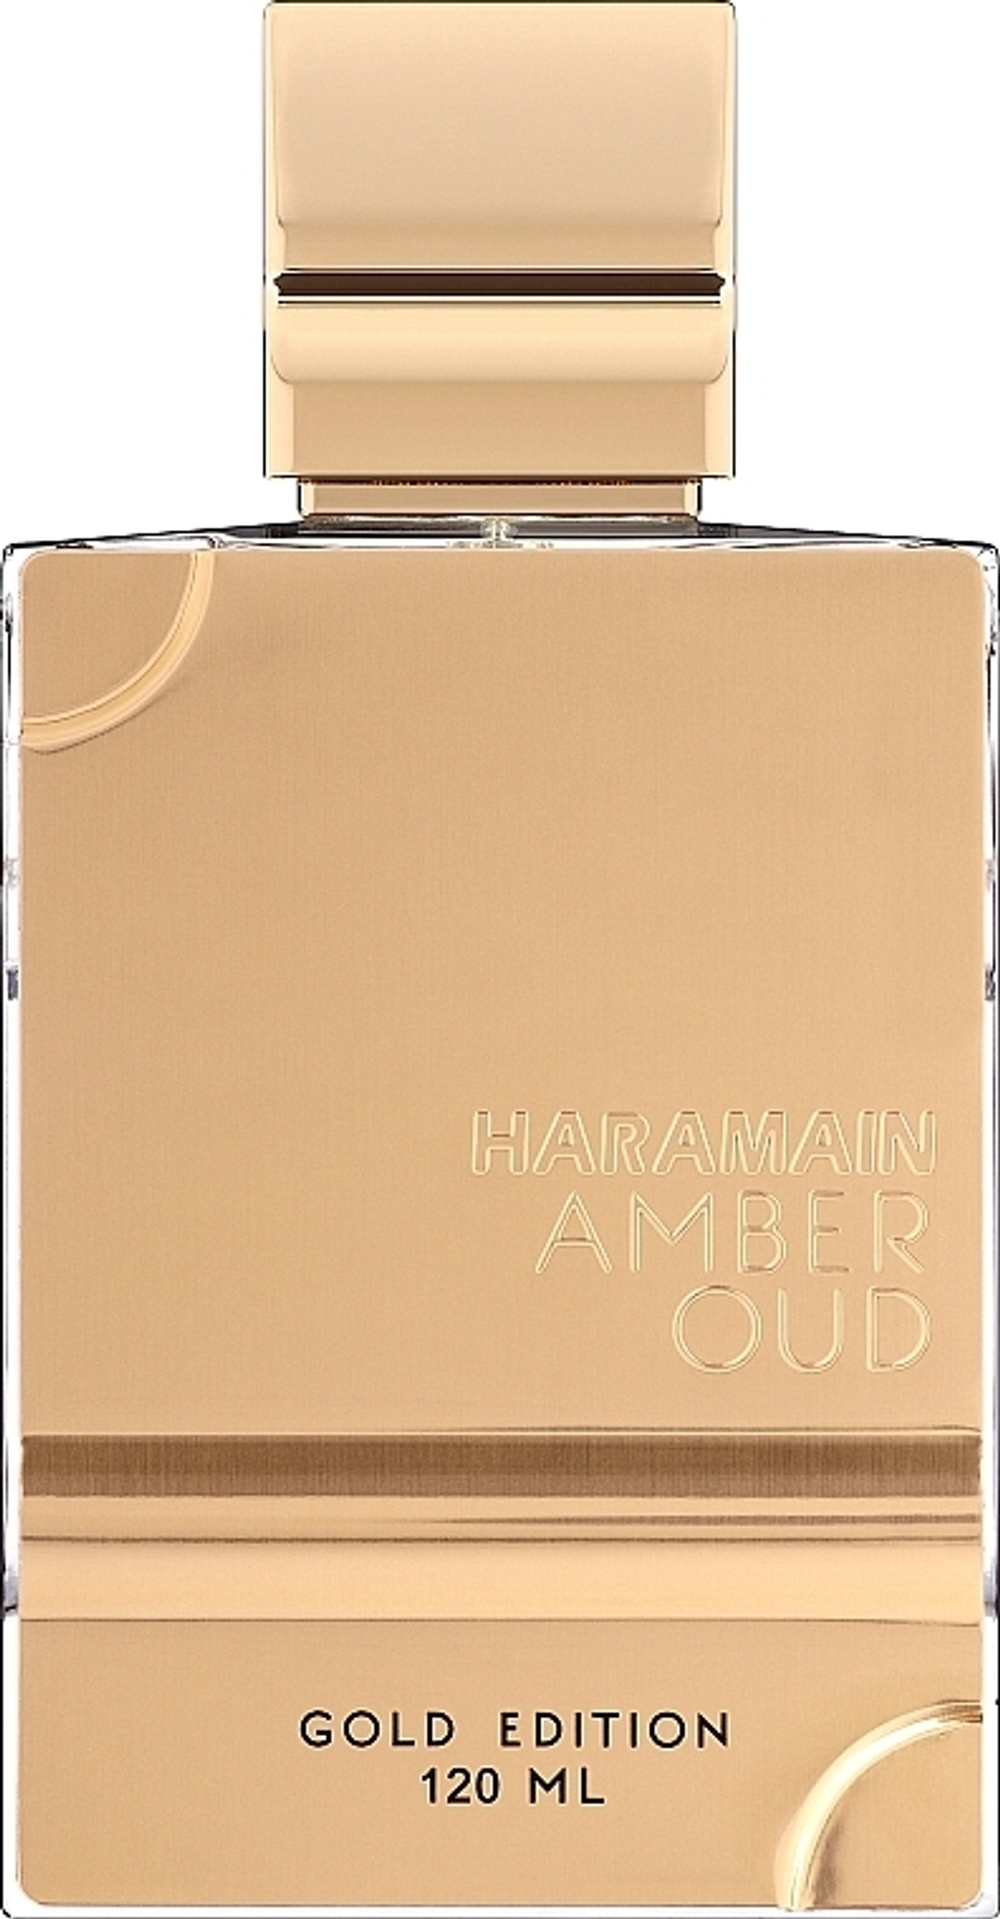 14500円はいかがでしょうかAl Haramain Amber Oud Gold Edition 120ml